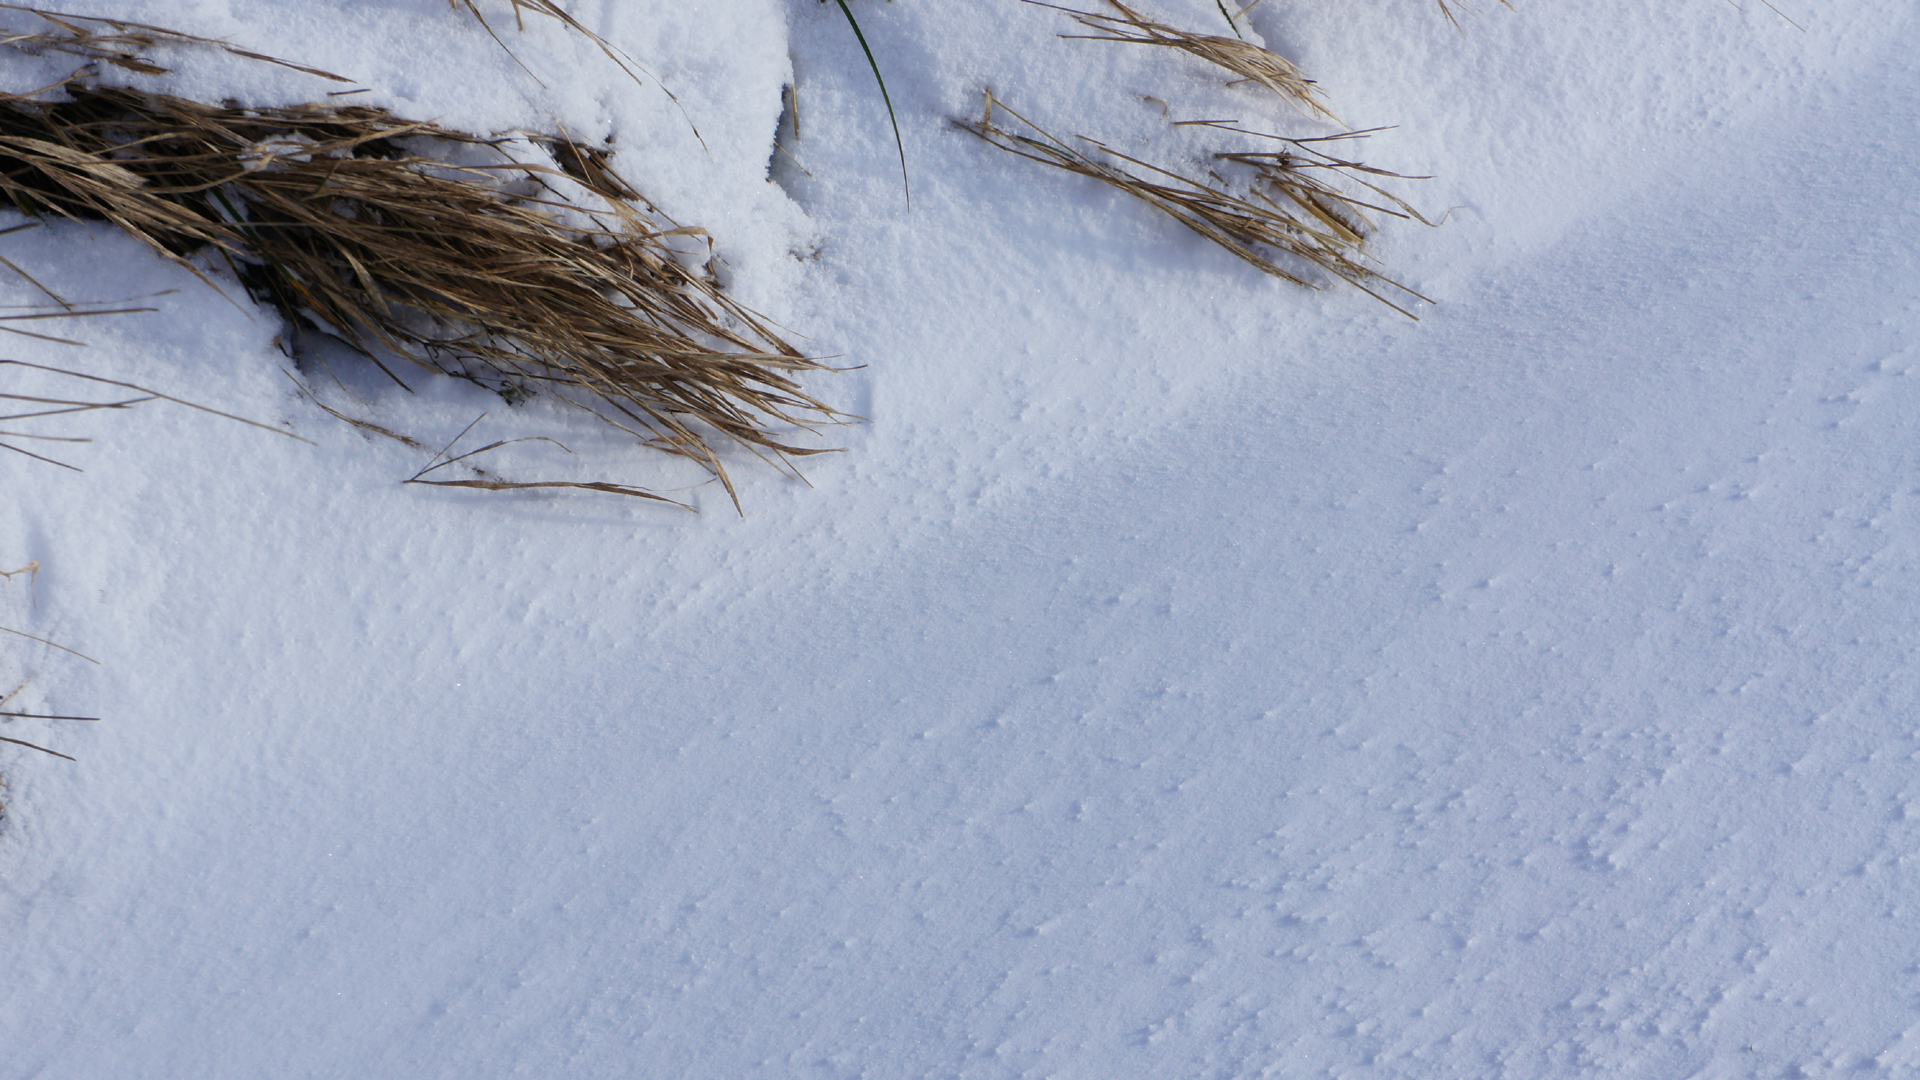 Fotostrecke Schnee Abbildung 06: Gras, Schnee und Wind